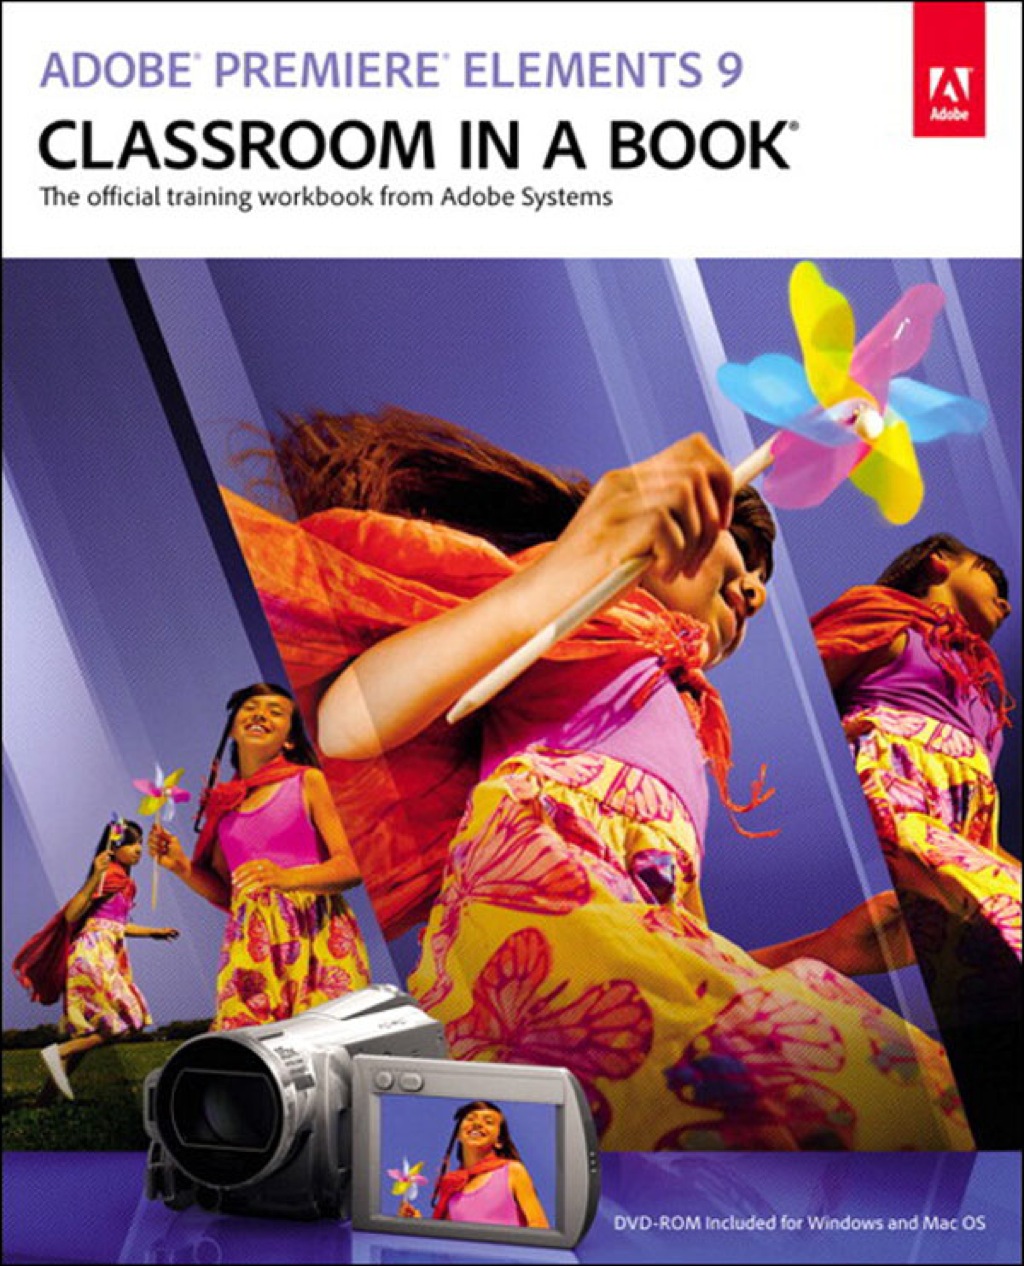 Adobe Premiere Elements 9 Classroom in a Book (eBook) - Adobe Creative Team